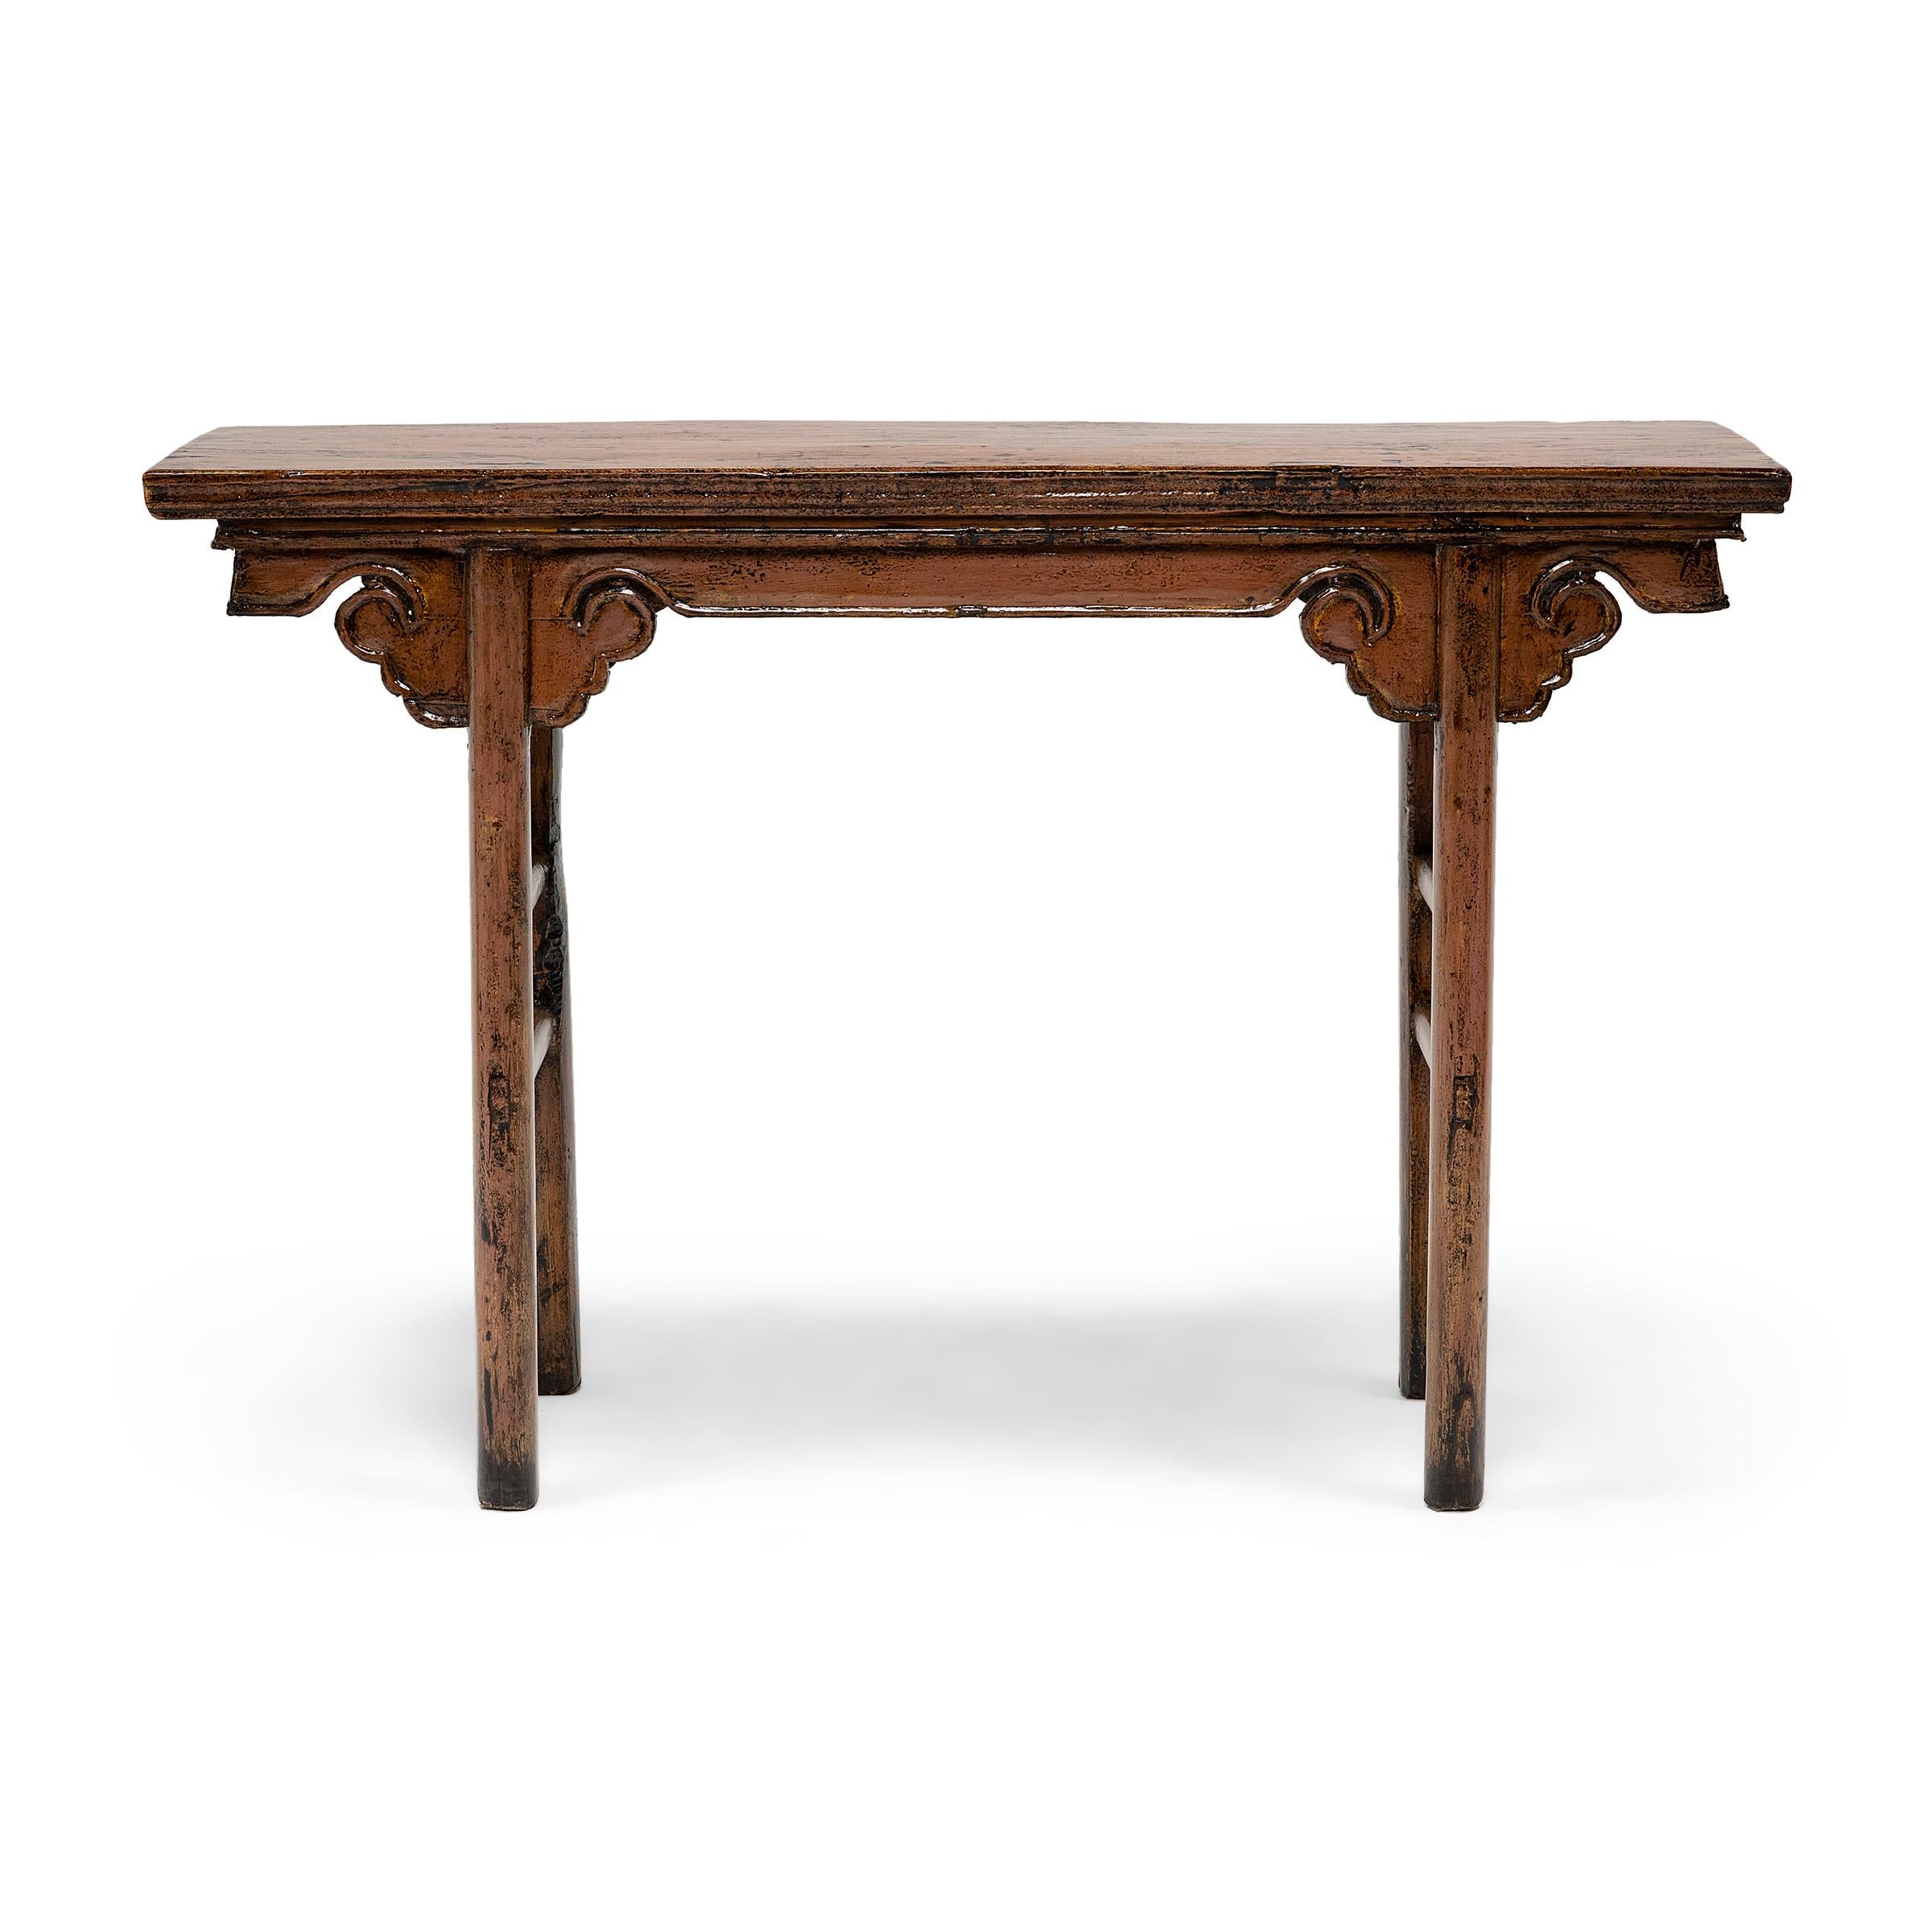 Cette table d'autel chinoise de la fin du XIXe siècle exprime les goûts de la dynastie Ming avec des lignes épurées et une silhouette simple. Décorée de façon minimale, la table est construite avec des pieds droits et des châssis doubles. Les pieds